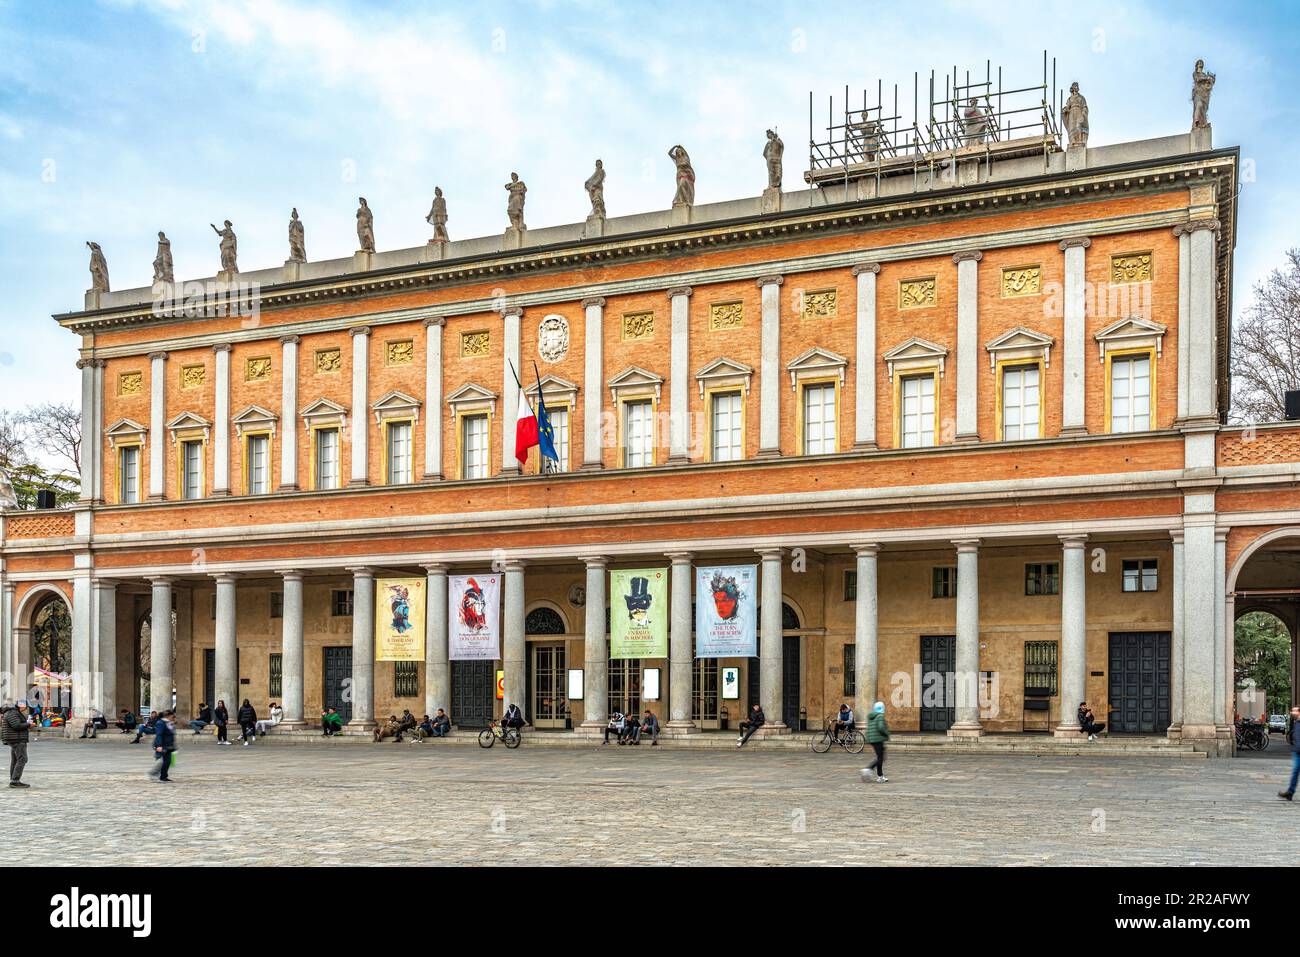 Le théâtre municipal Romolo Valli est un bâtiment néoclassique datant de 19th ans aux intérieurs richement décorés. Reggio Emilia, Emilie Romagne, Italie, Europe Banque D'Images